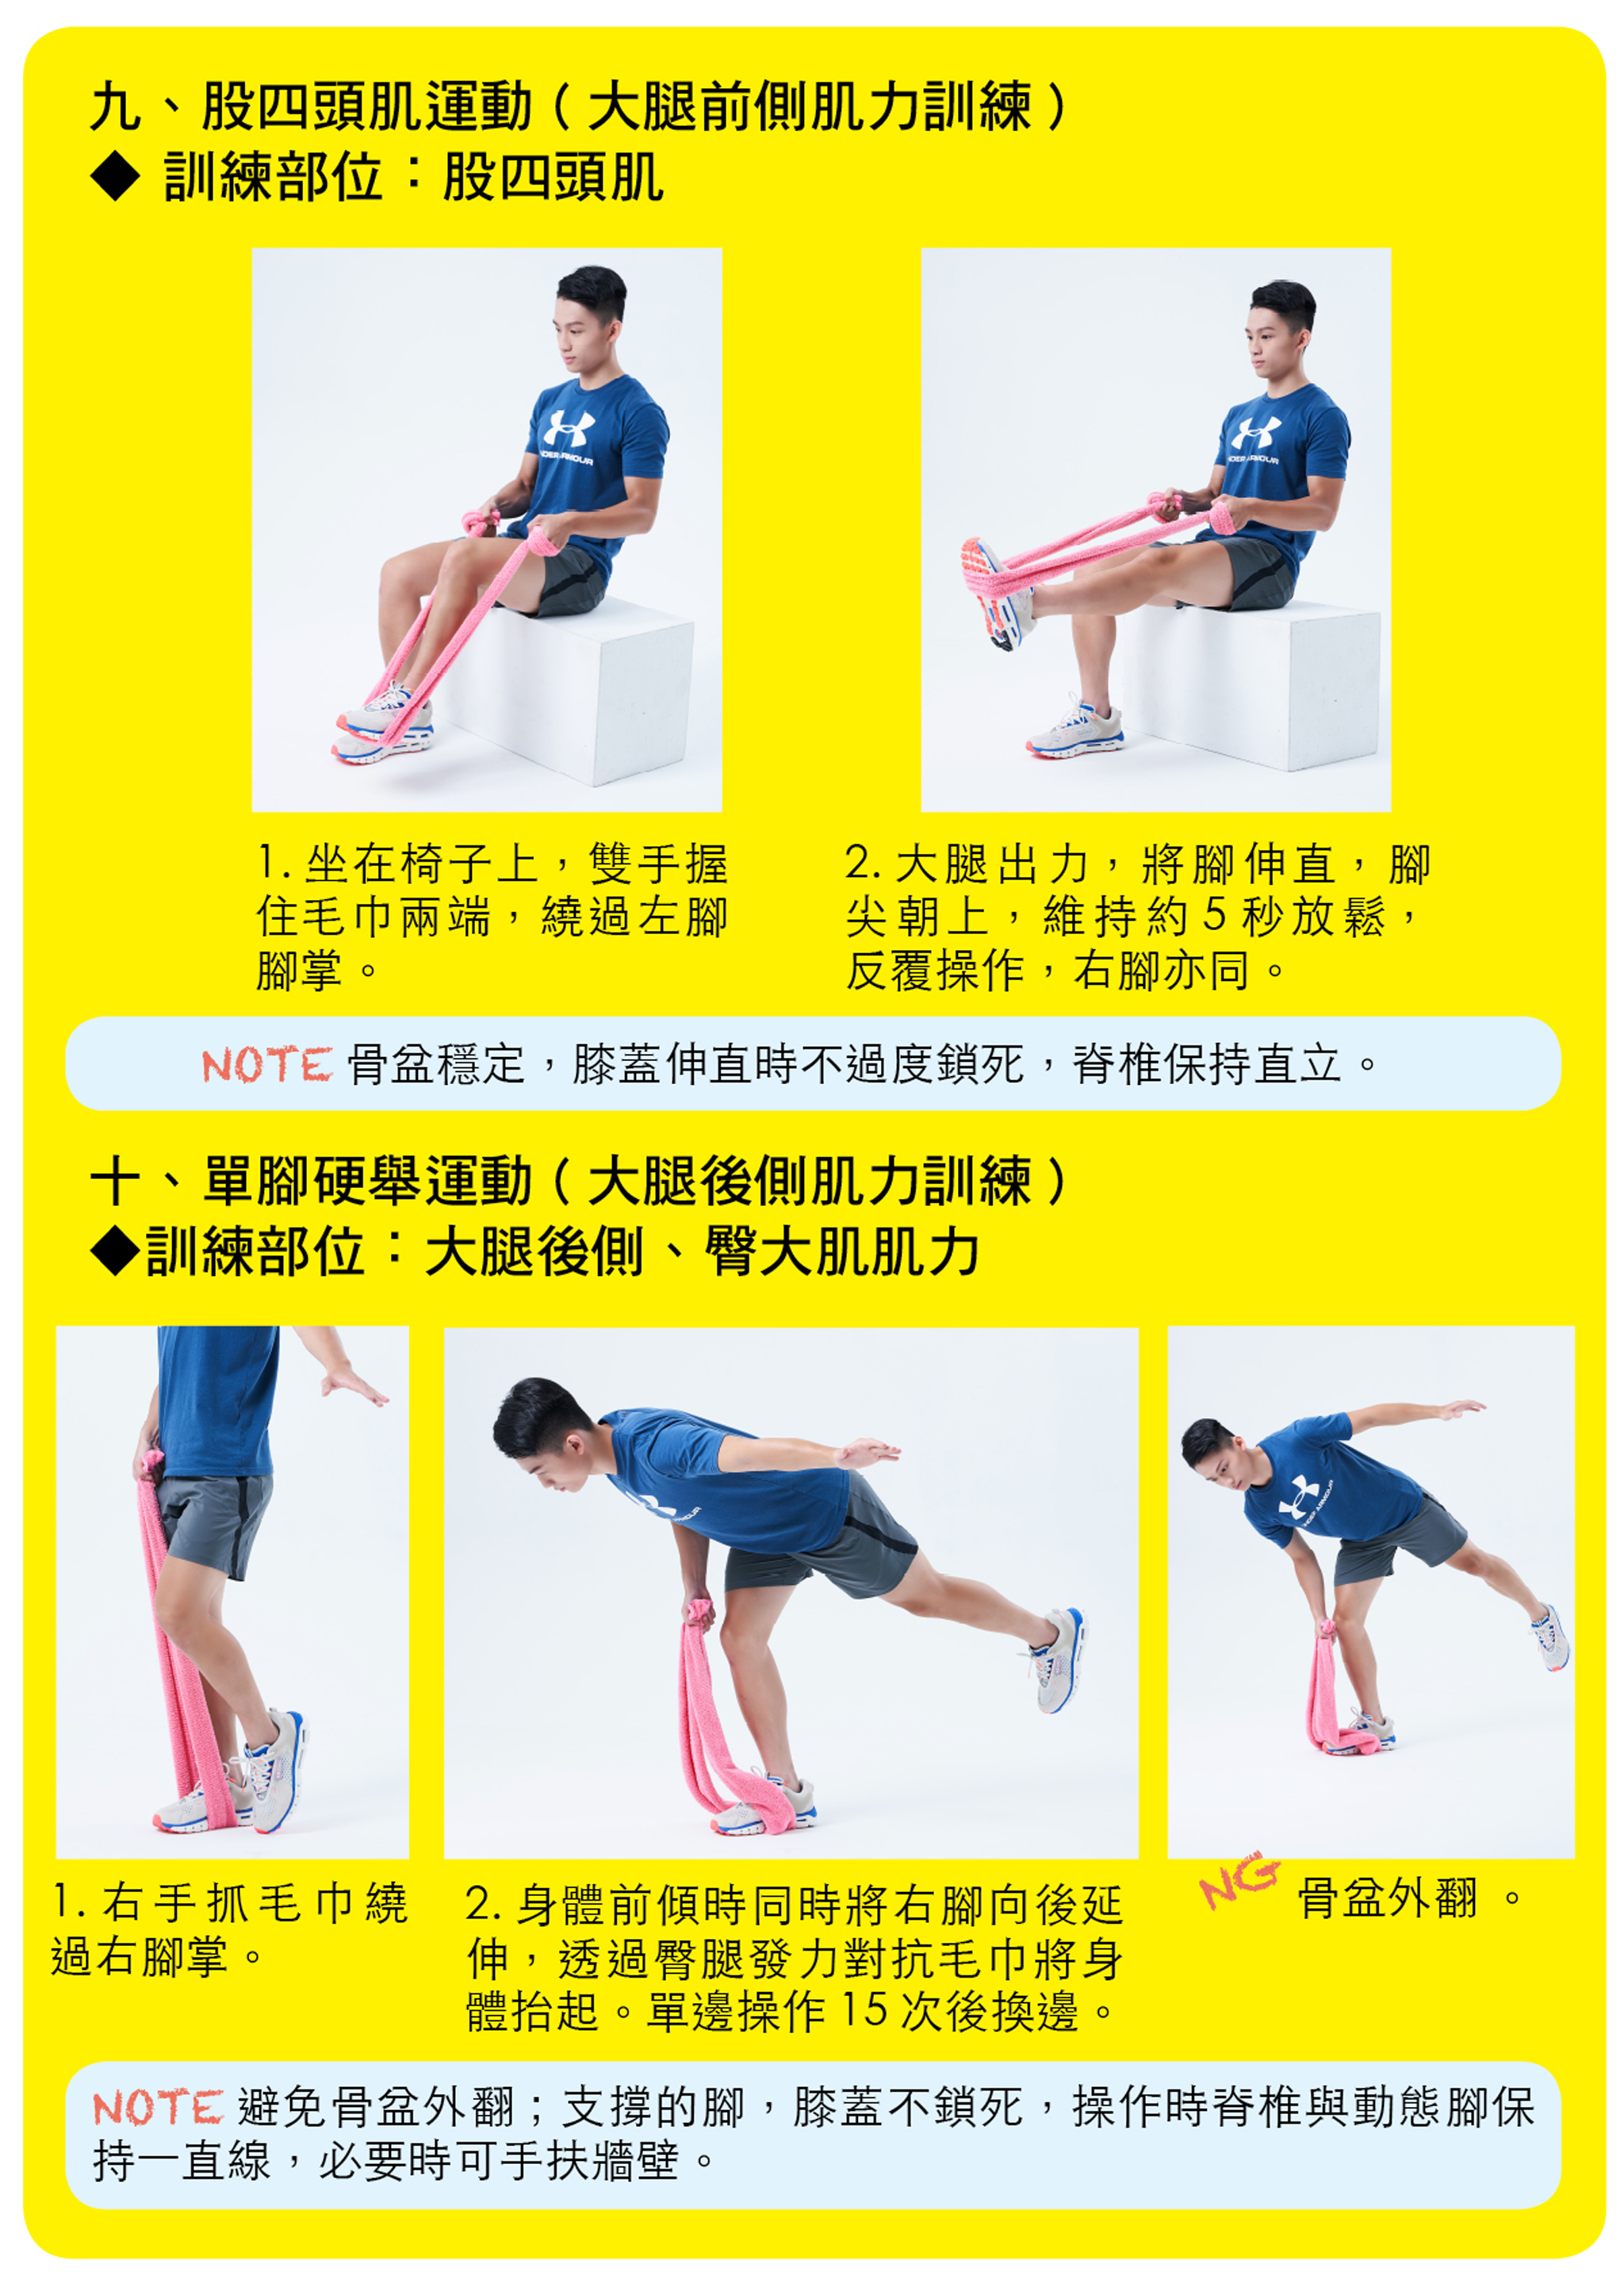 股四頭肌運動（大腿前側肌力訓練）、單腳硬舉運動（大腿後側肌力訓練）。